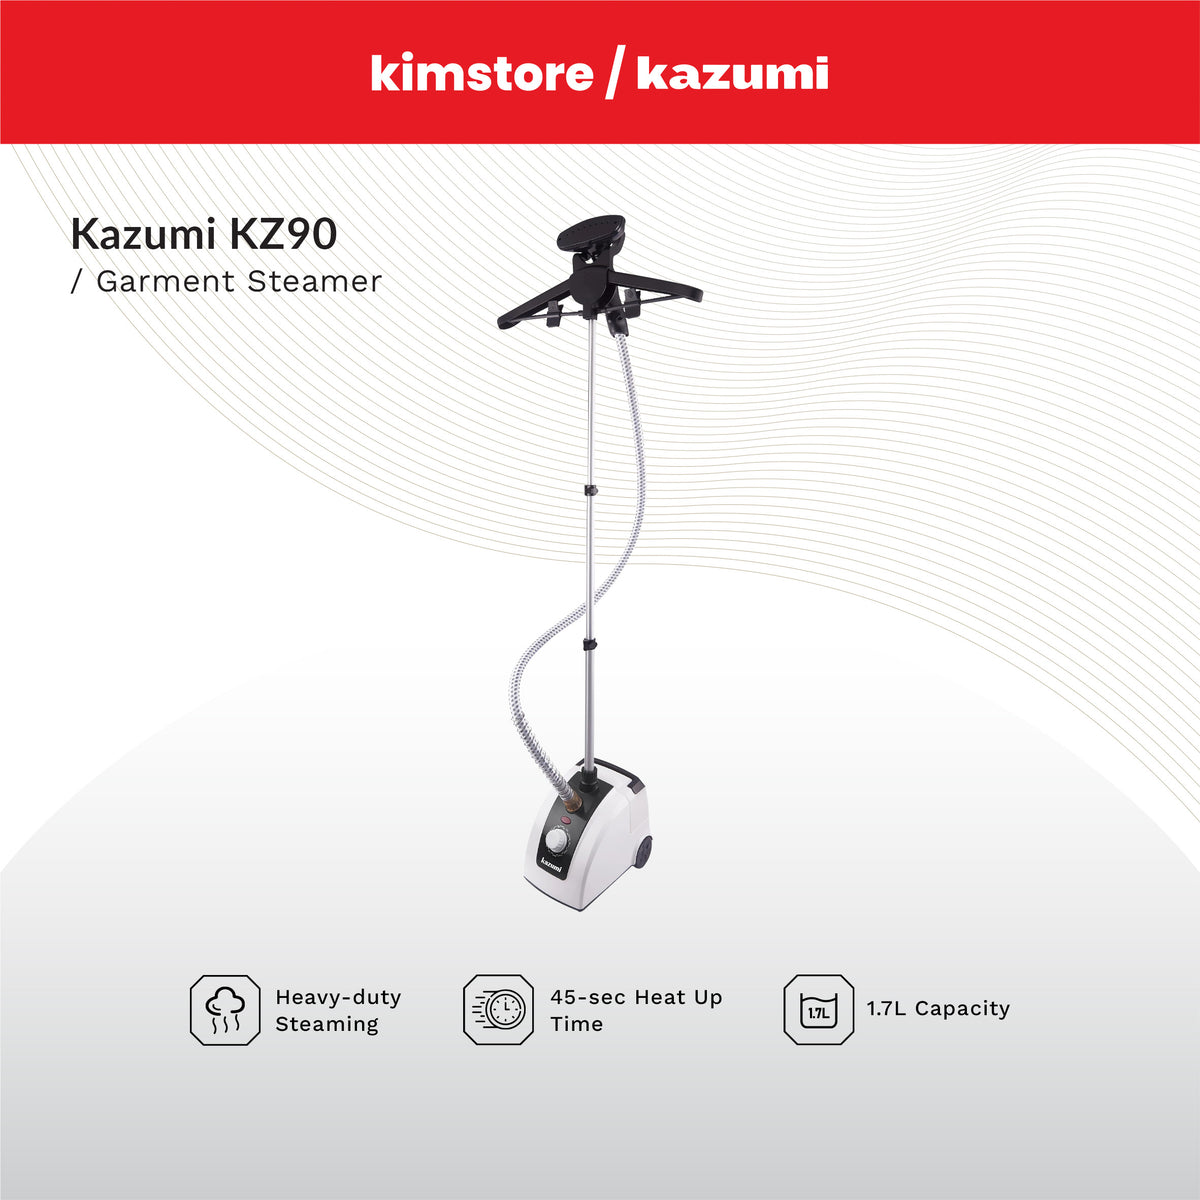 KAZUMI KZ90 Garment Steamer